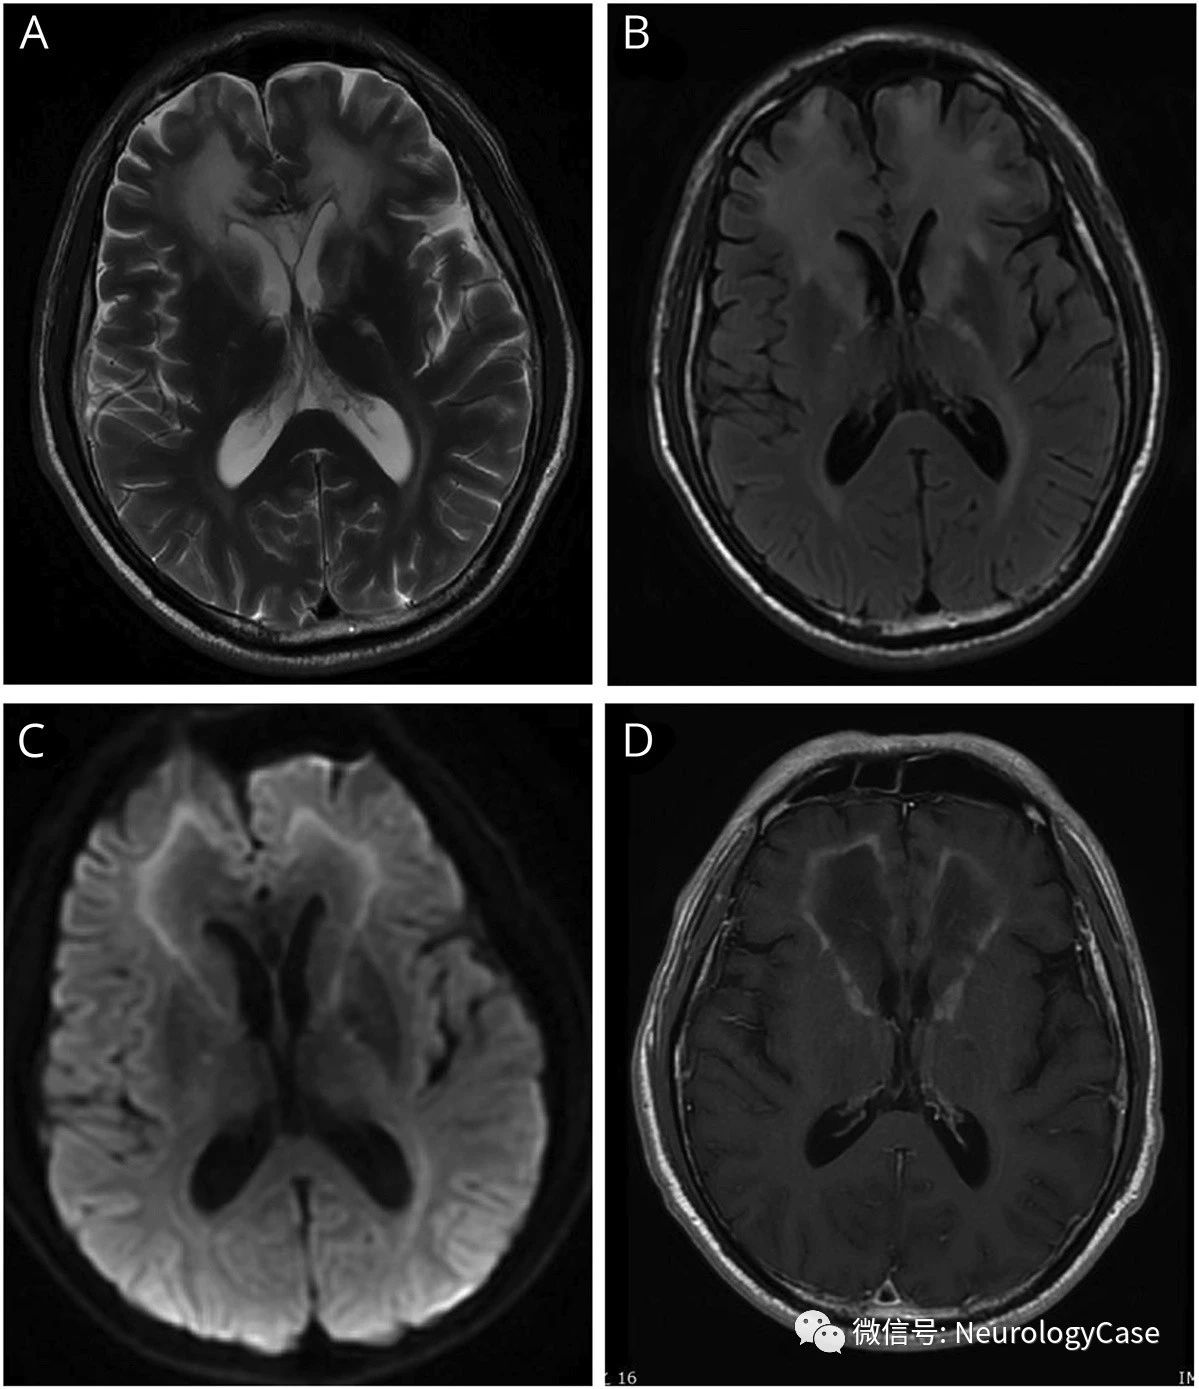 Neurology：见于成人起病的X连锁肾上腺脑白质营养不良的额叶受累